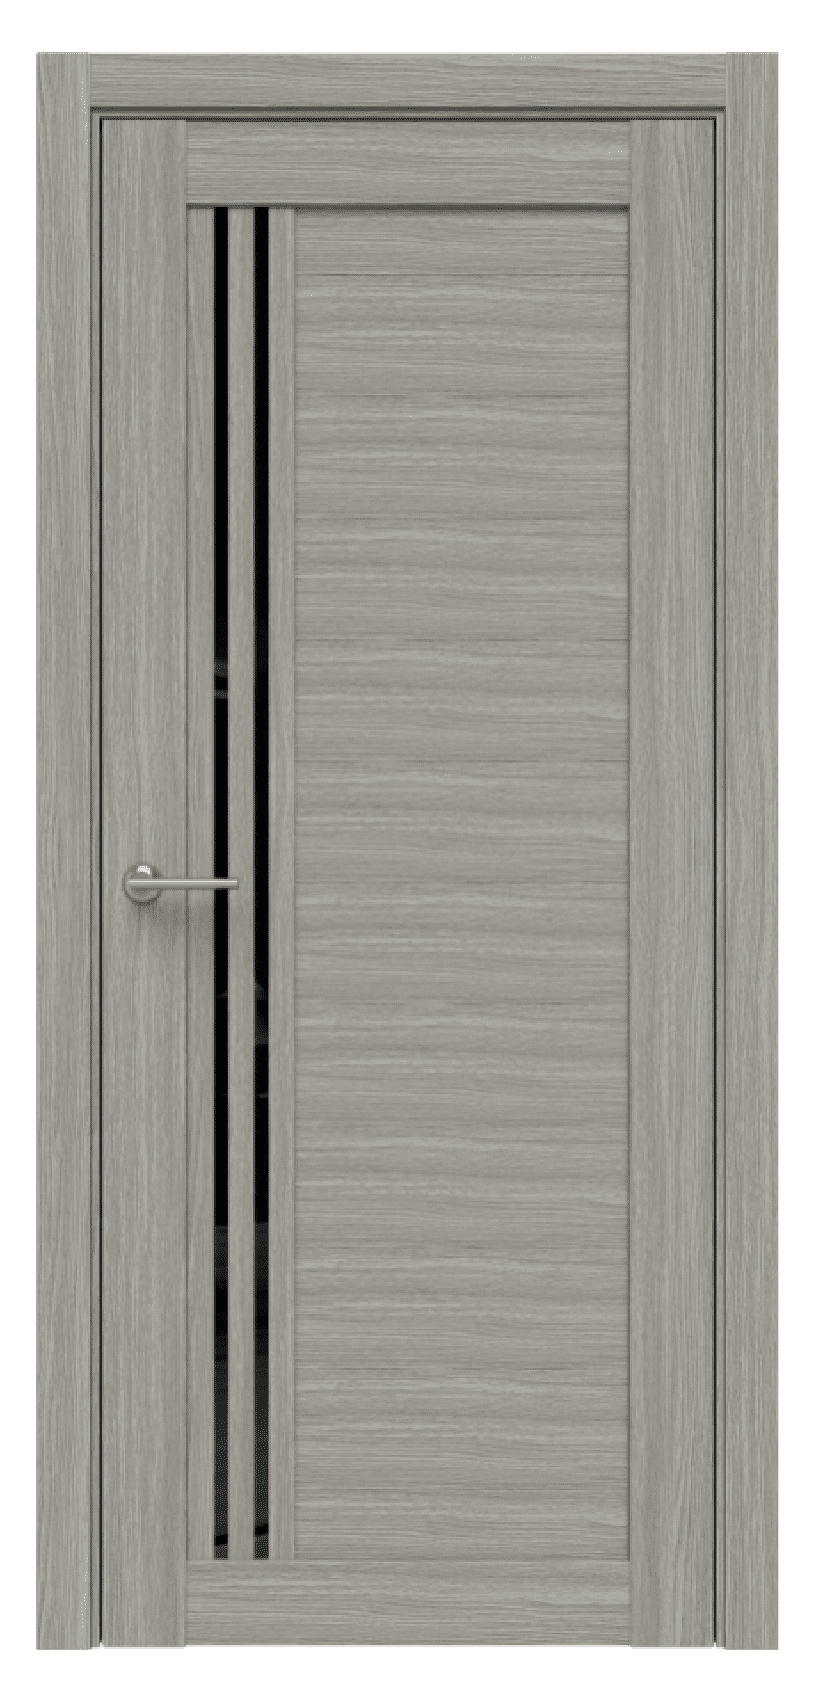 Questdoors Межкомнатная дверь Q36, арт. 17472 - фото №1